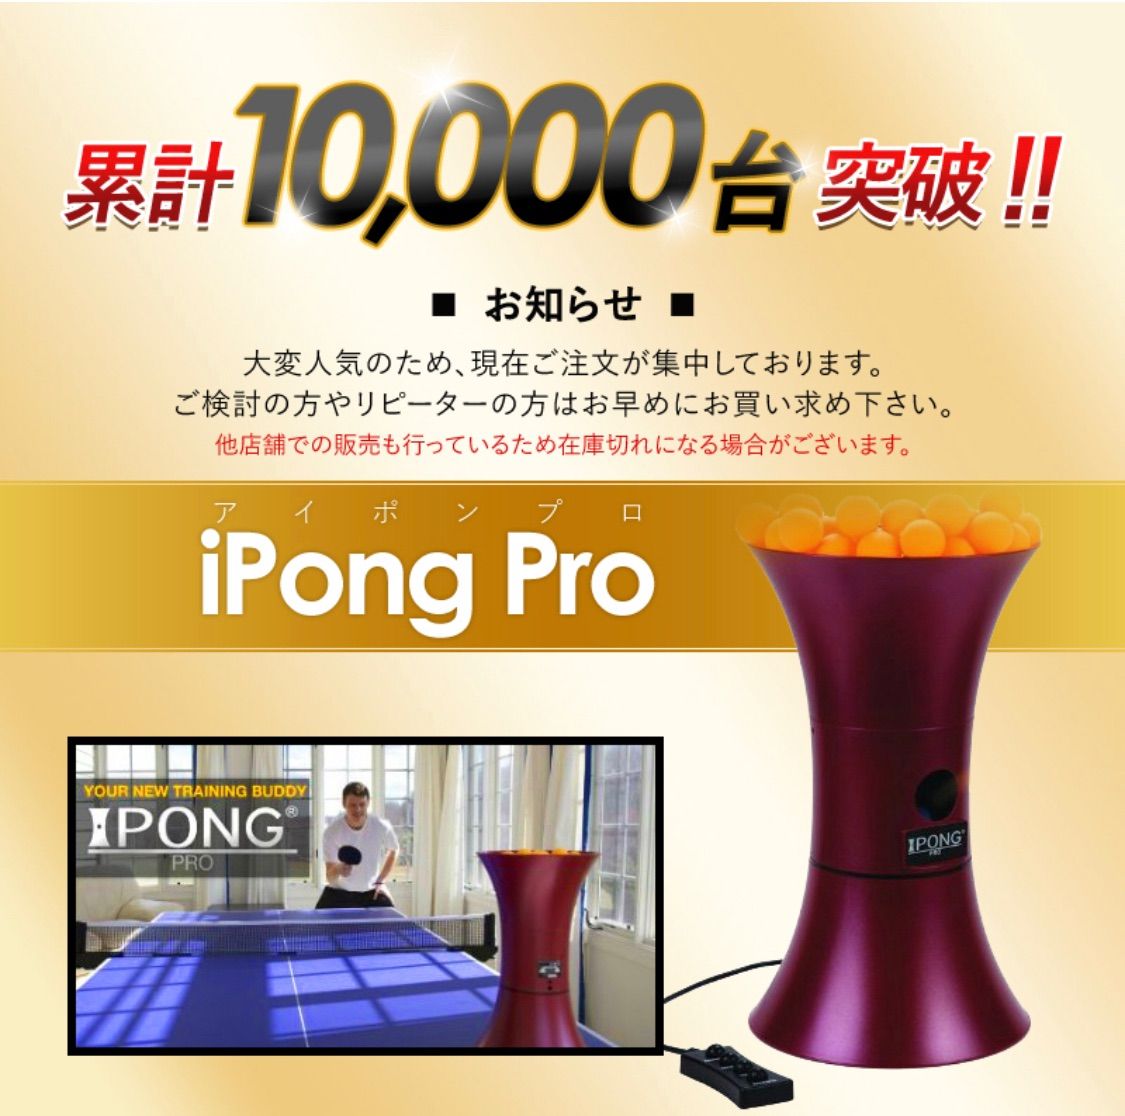 i pong pro アイポン プロ 卓球マシン - スポーツ/アウトドア その他